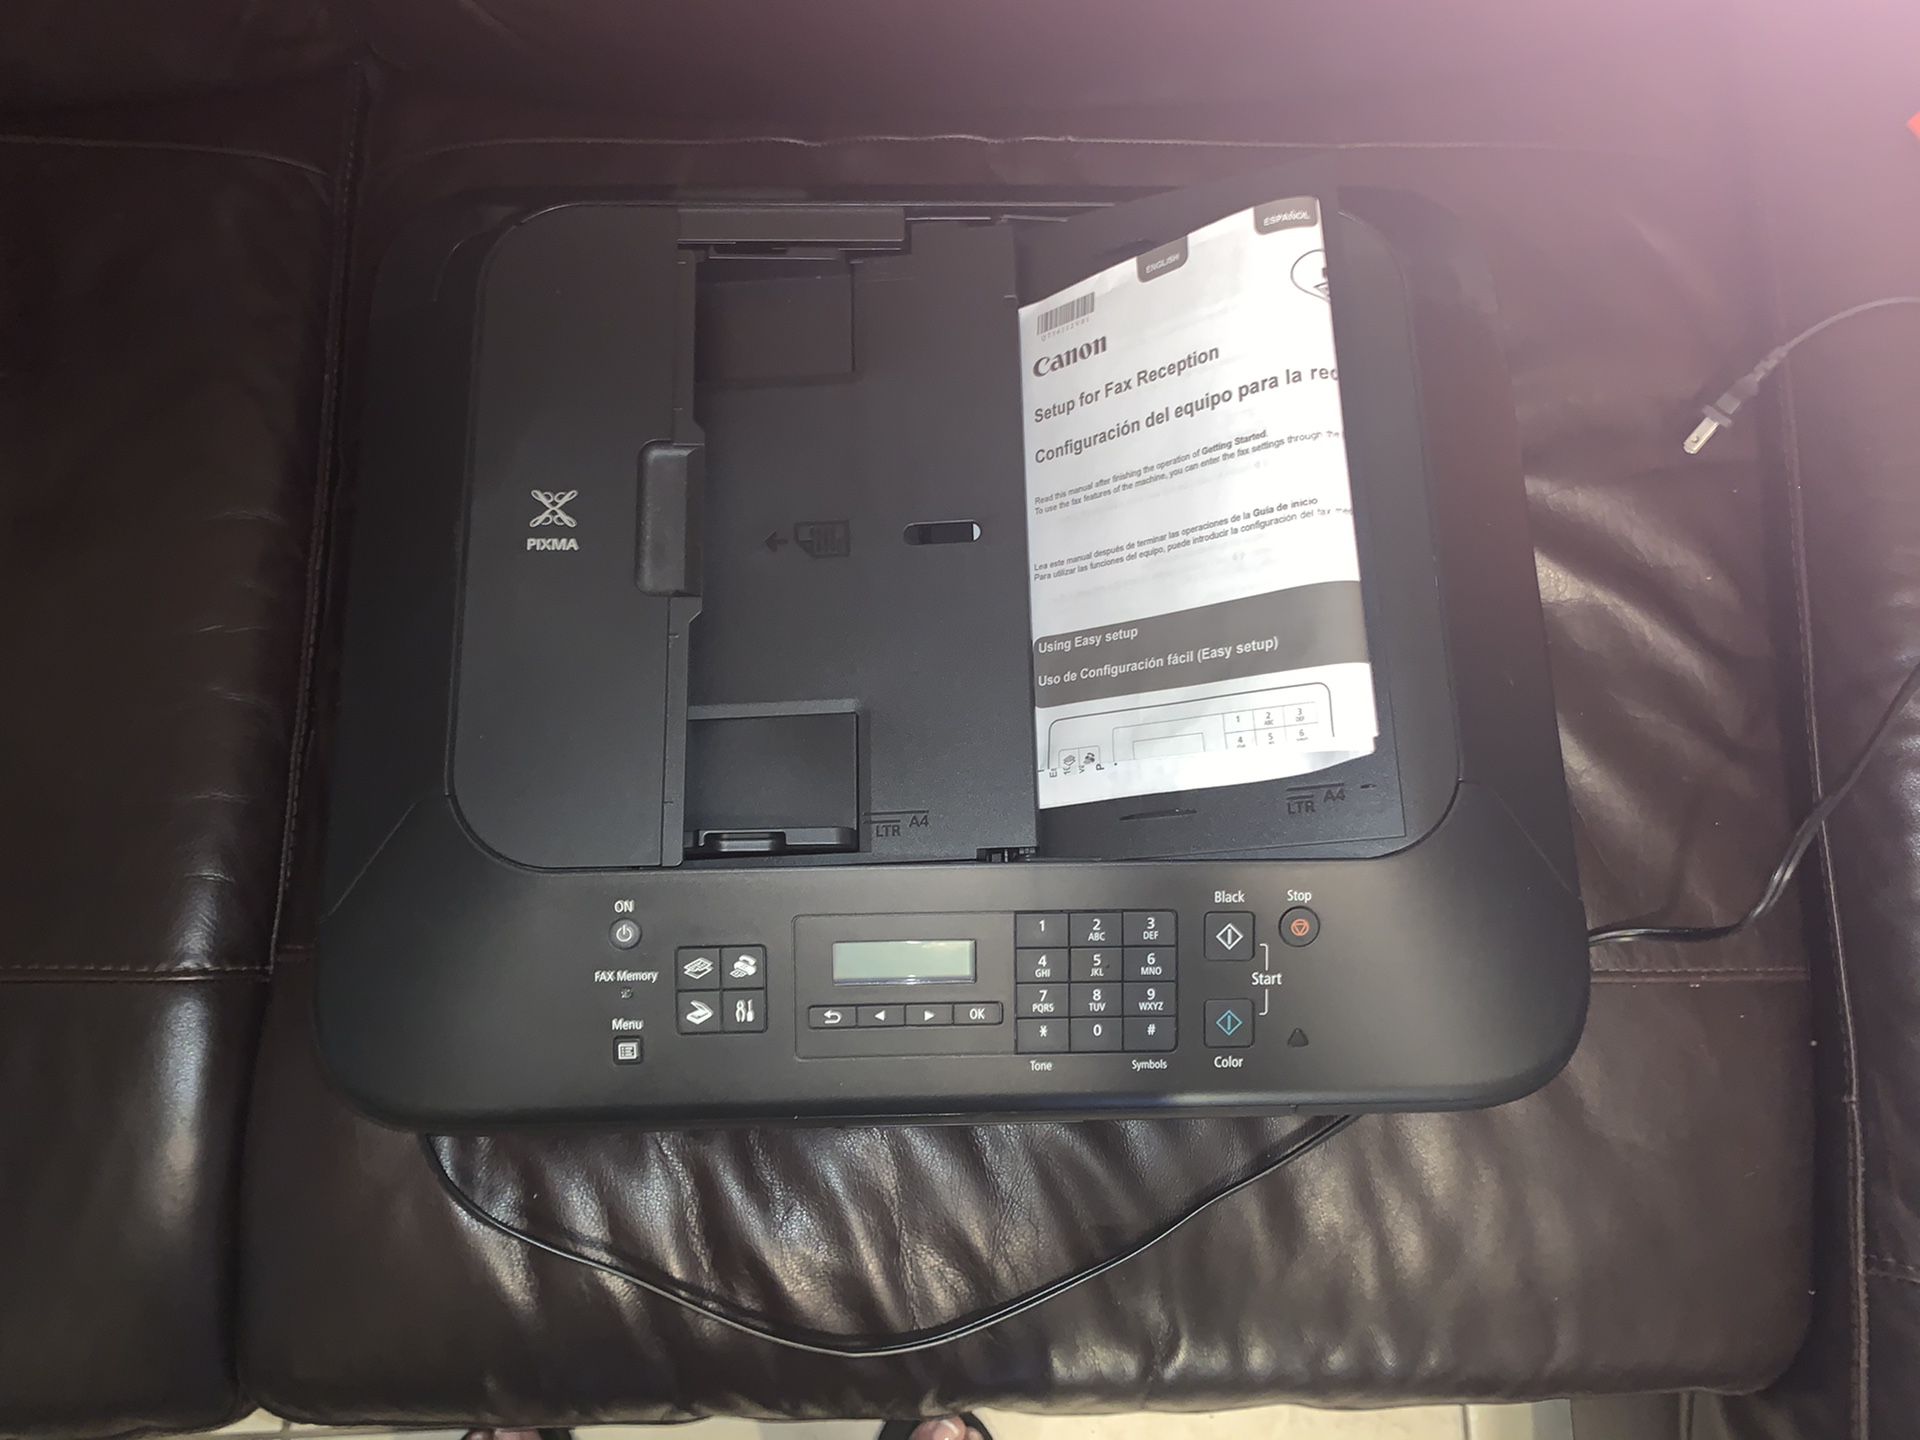 Printer fax copier multi uses